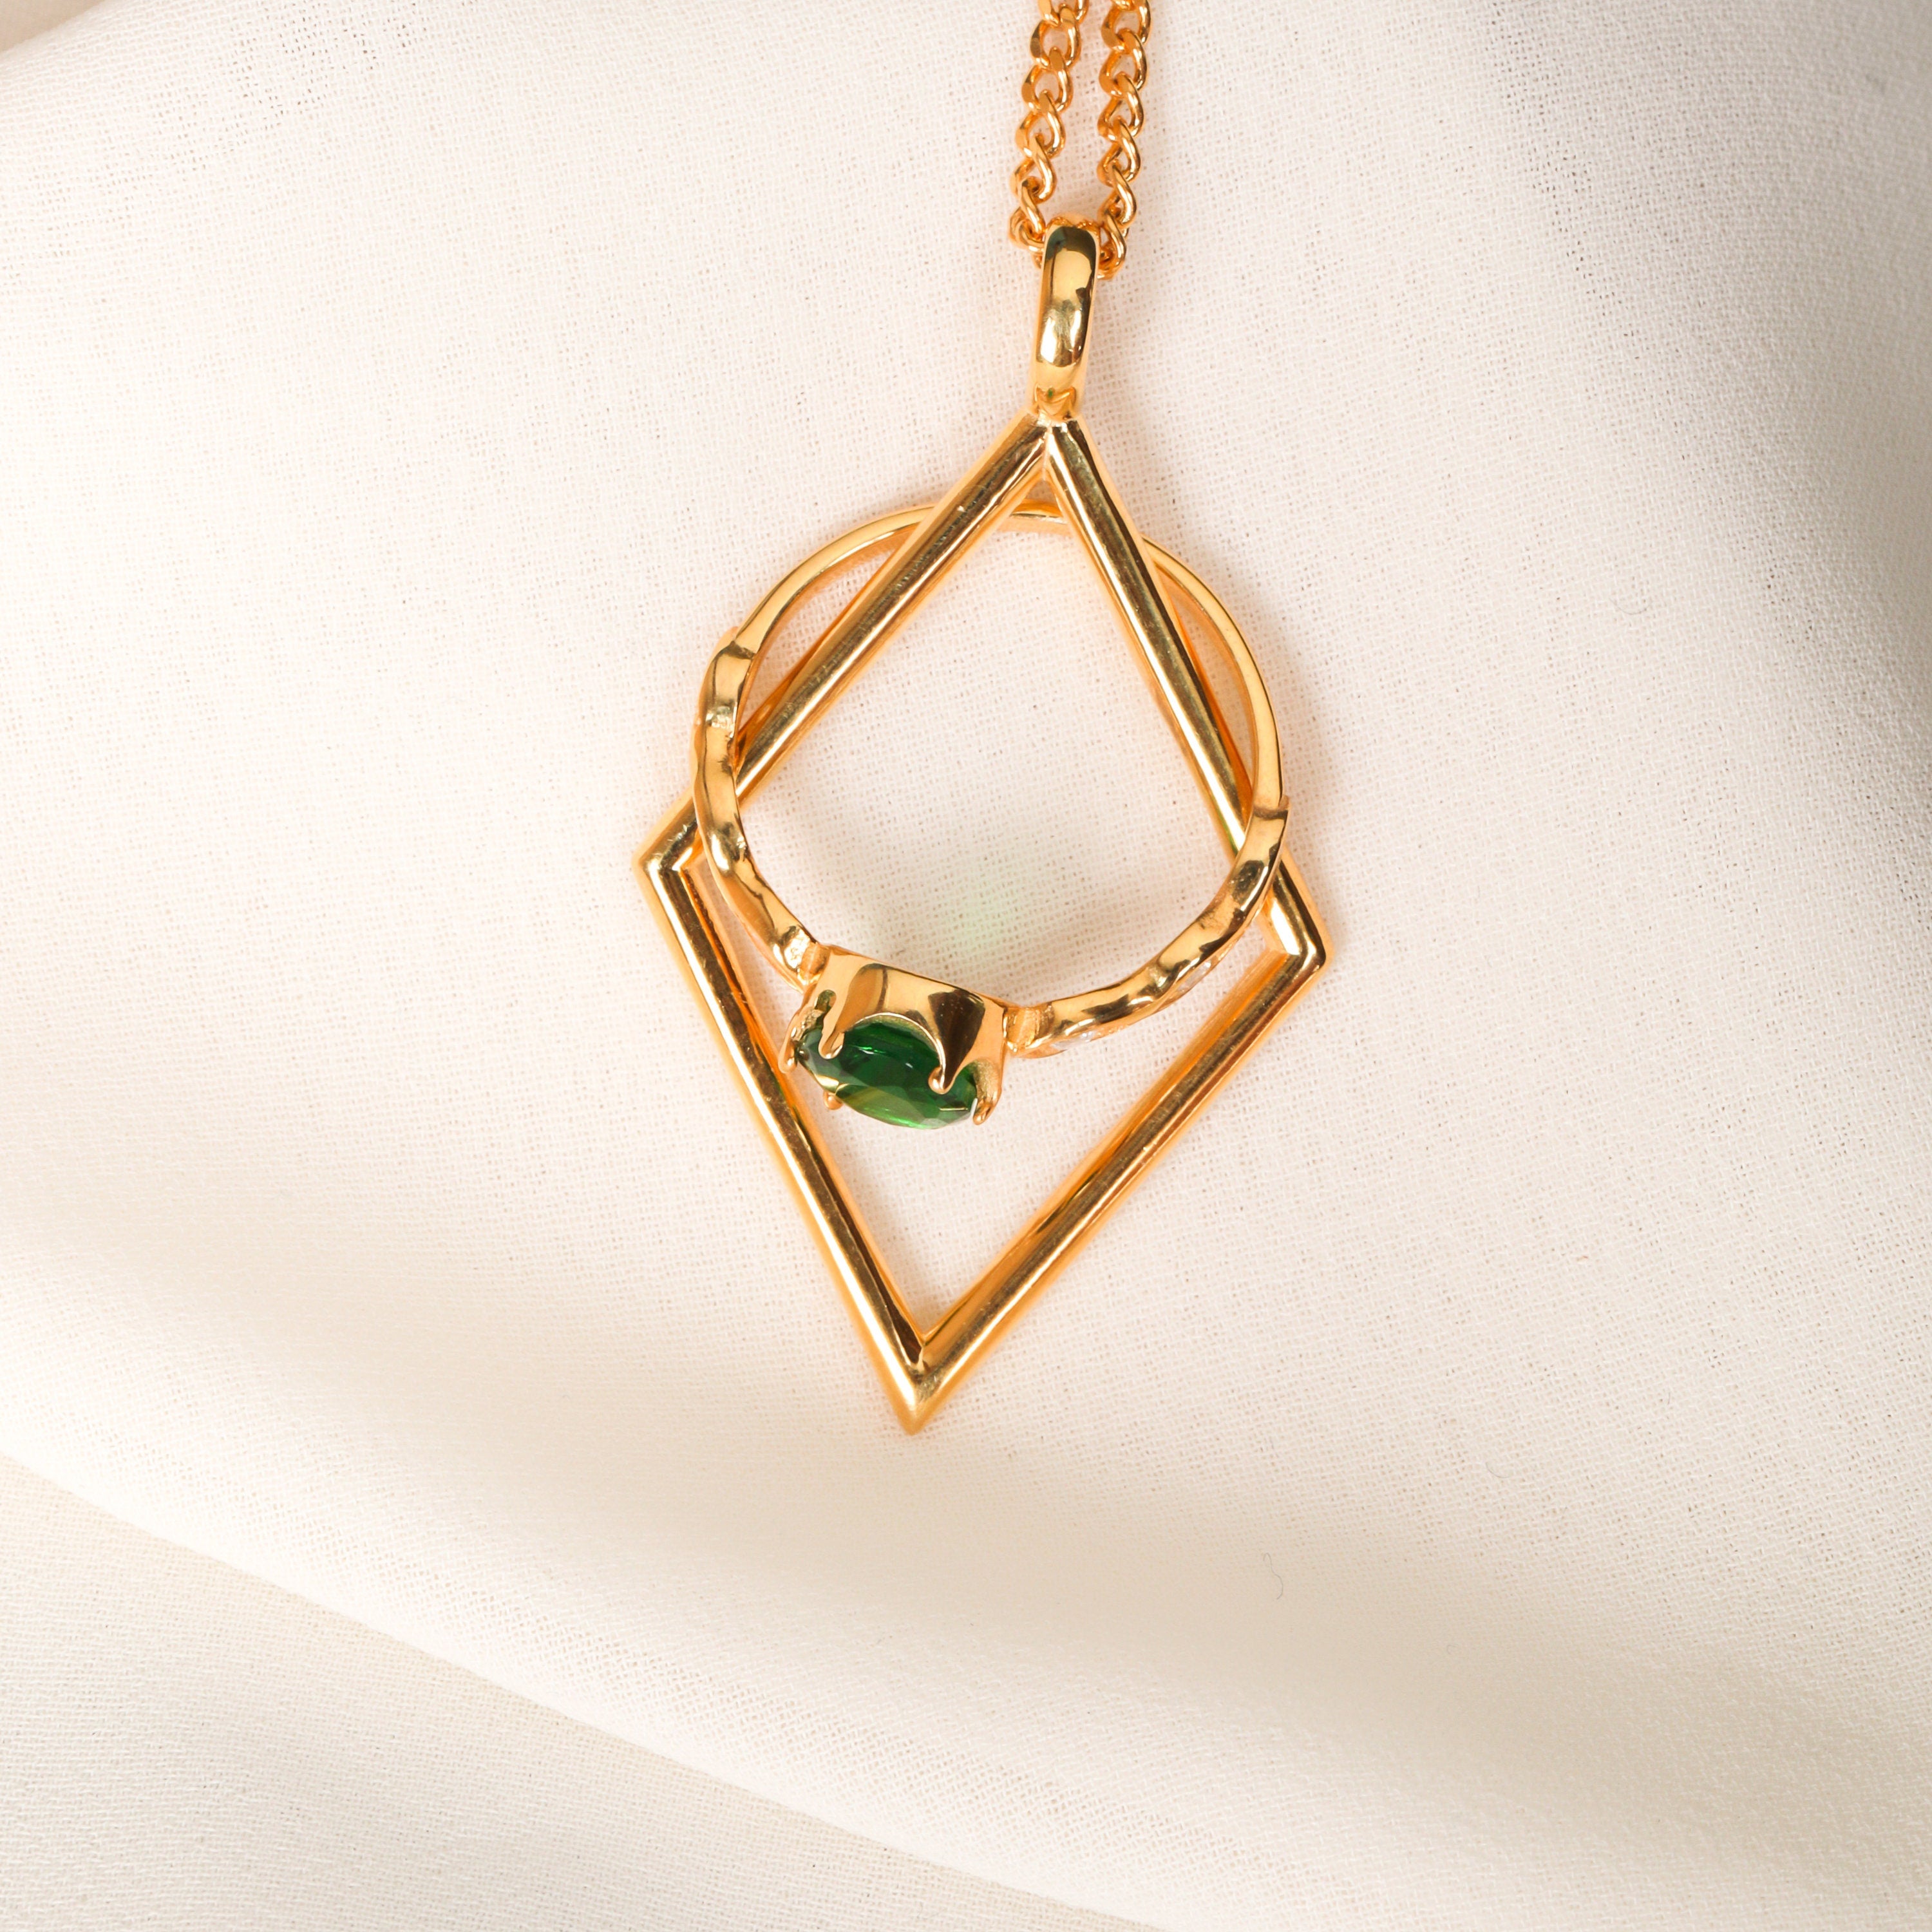 Fishtail Ring Holder Necklace, Ring Keeper Pendant, Ocean Lover Gift,